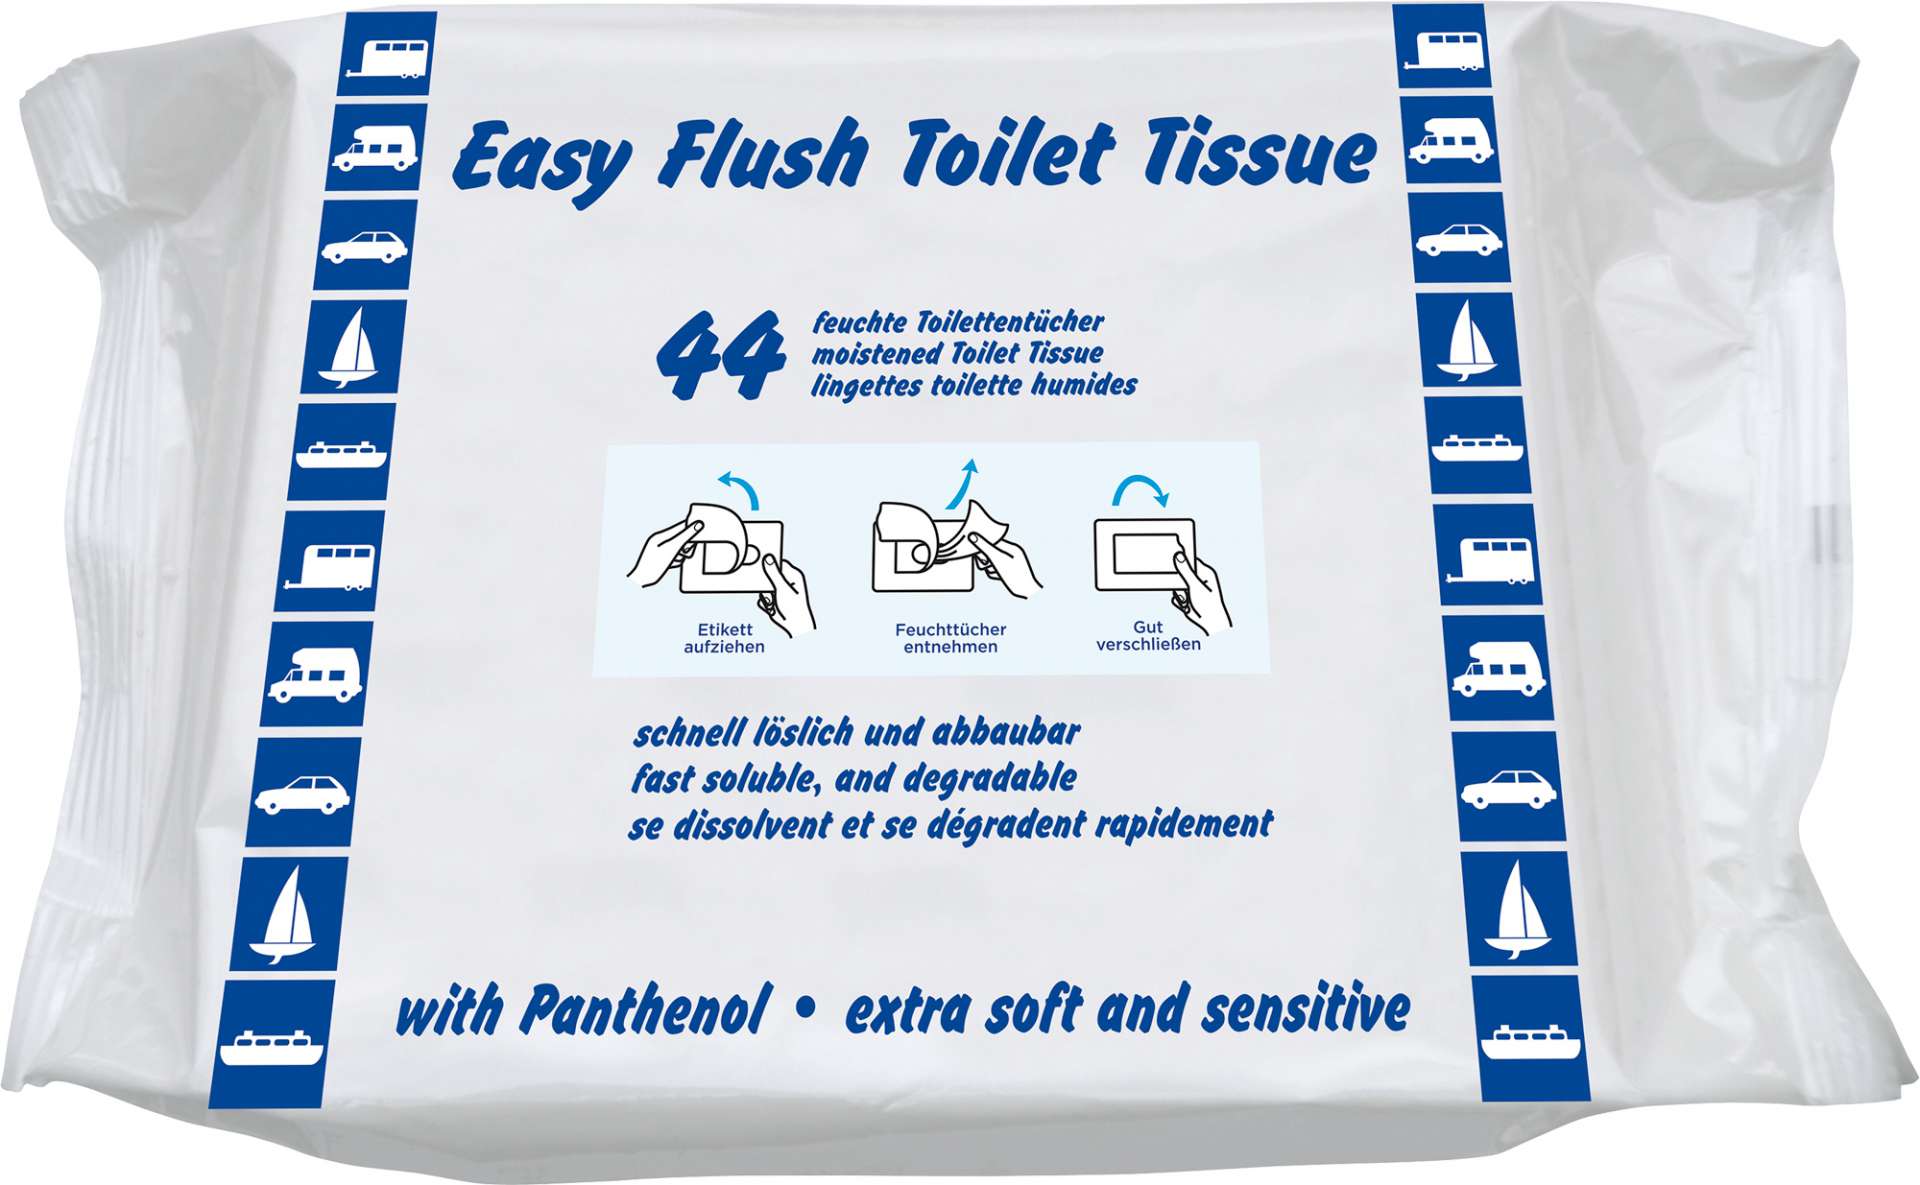 Yachticon Toilettensitz Papierabdeckung 10 Stück hygienisch Einmalpapier Camping